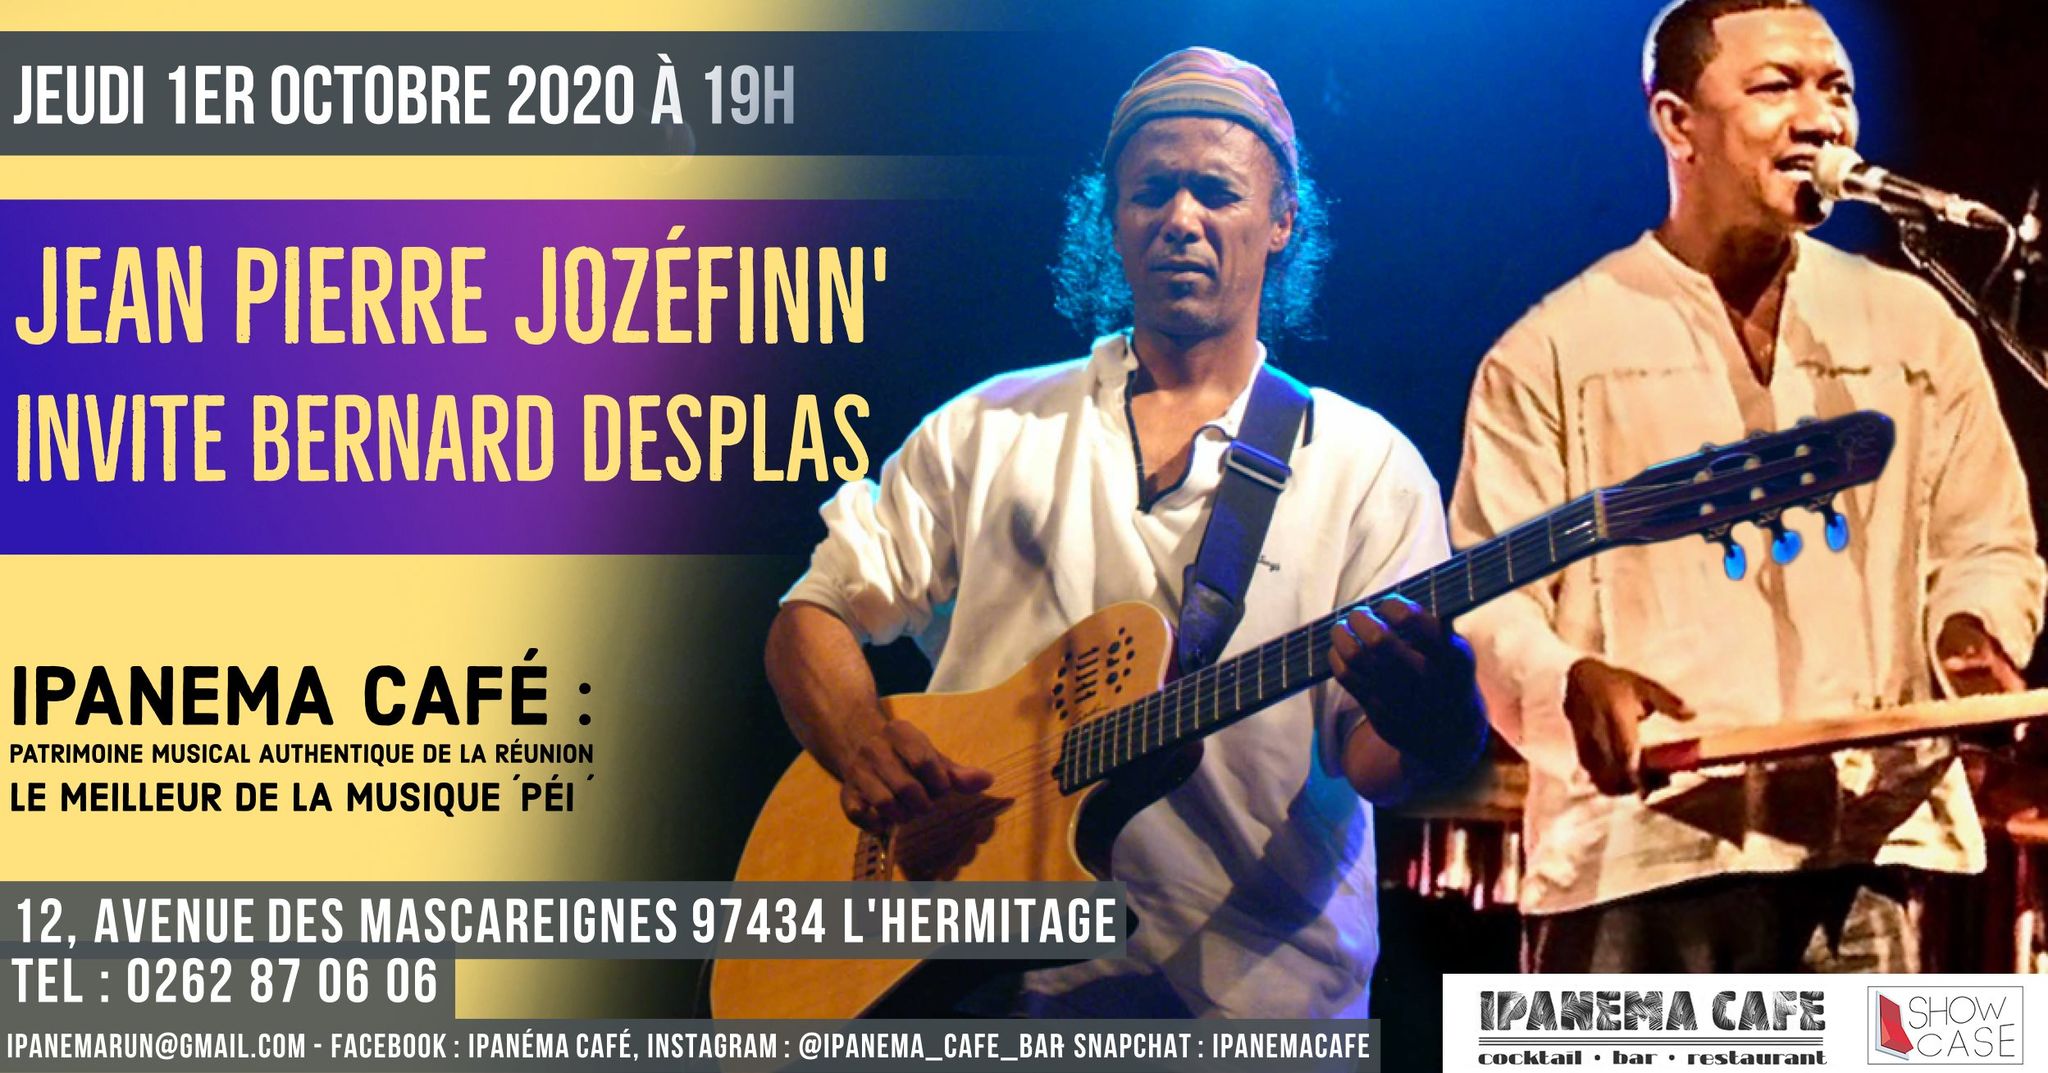 Jozéfinn' et Bernard Desplas en concert à Ipanéma Café le 1er octobre